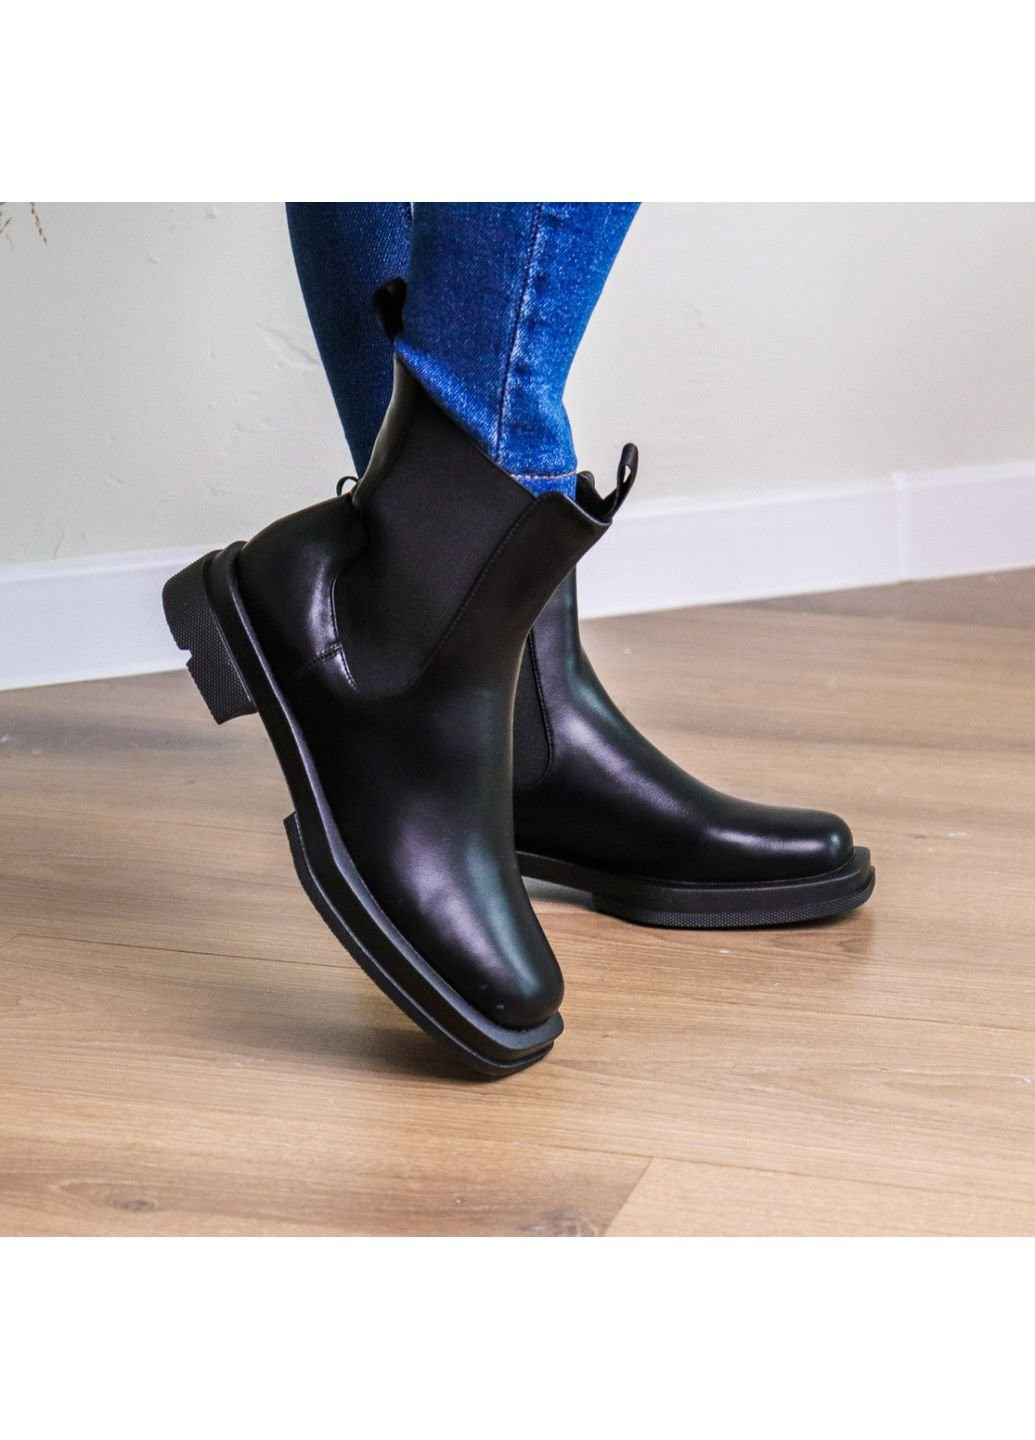 Осенние ботинки женские loyalty 3240 38 24,5 см черный Fashion из искусственной кожи